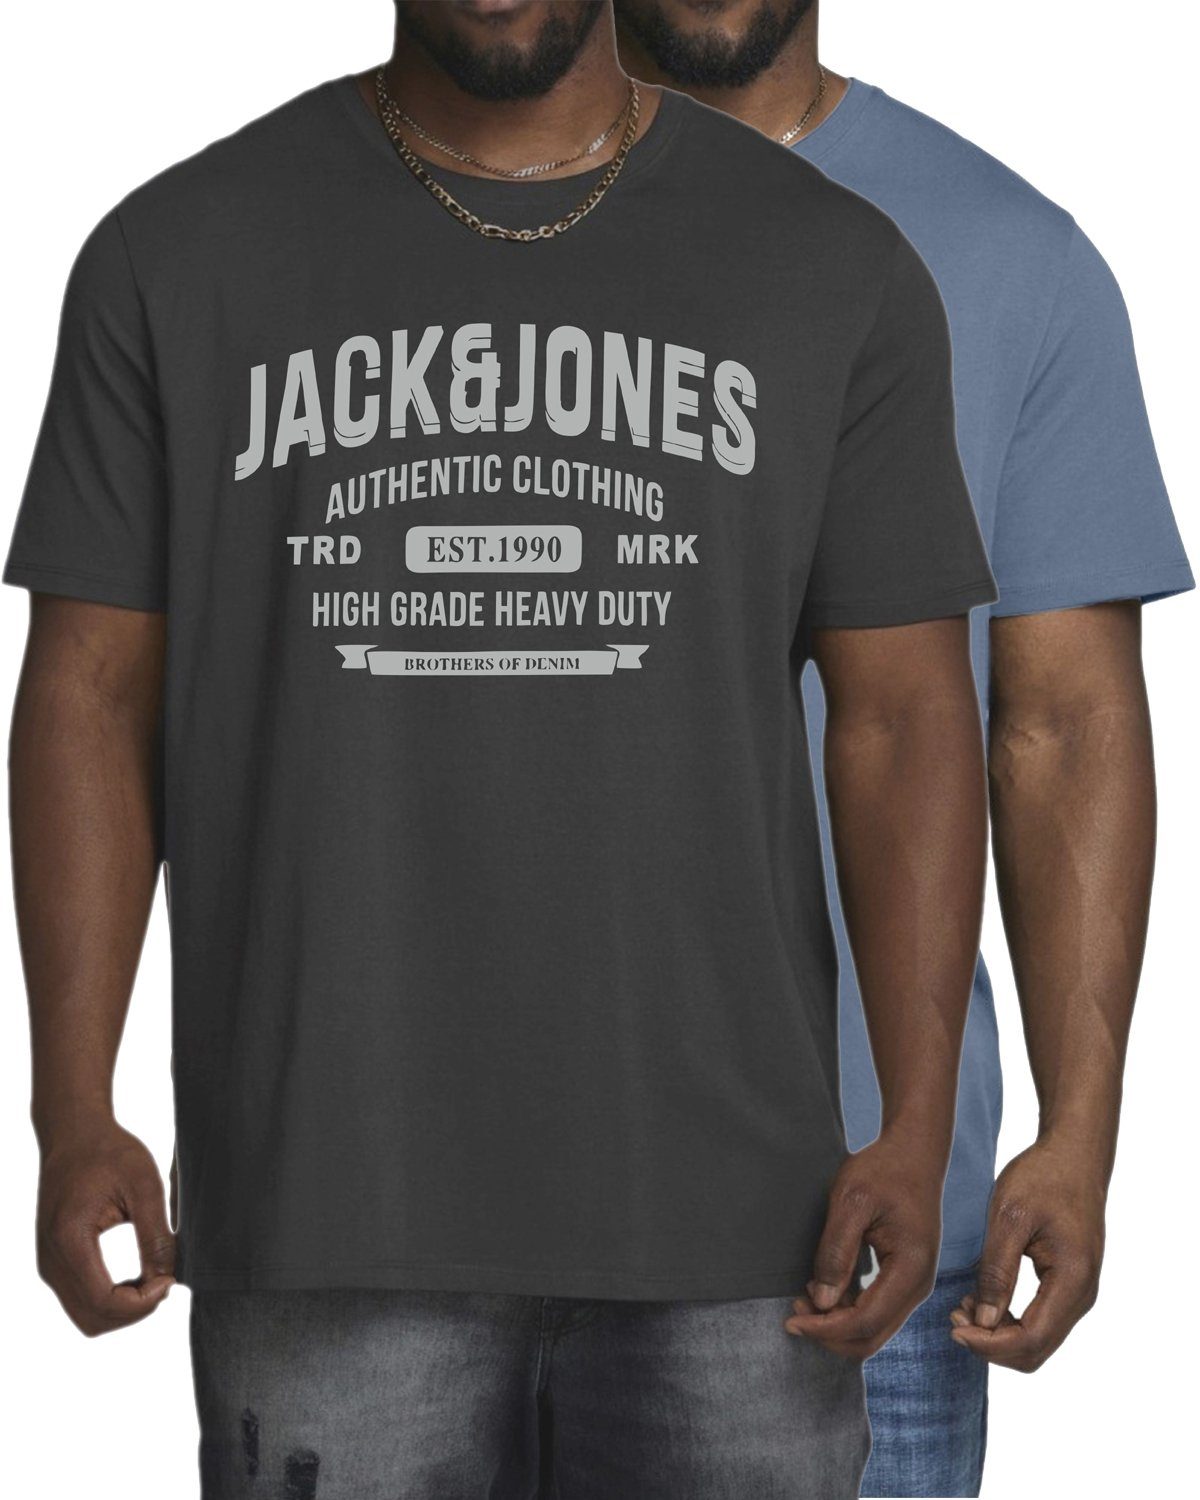 Unifarben, Pack-06 & Jack Jones aus (2er-Pack) in Baumwolle Print-Shirt